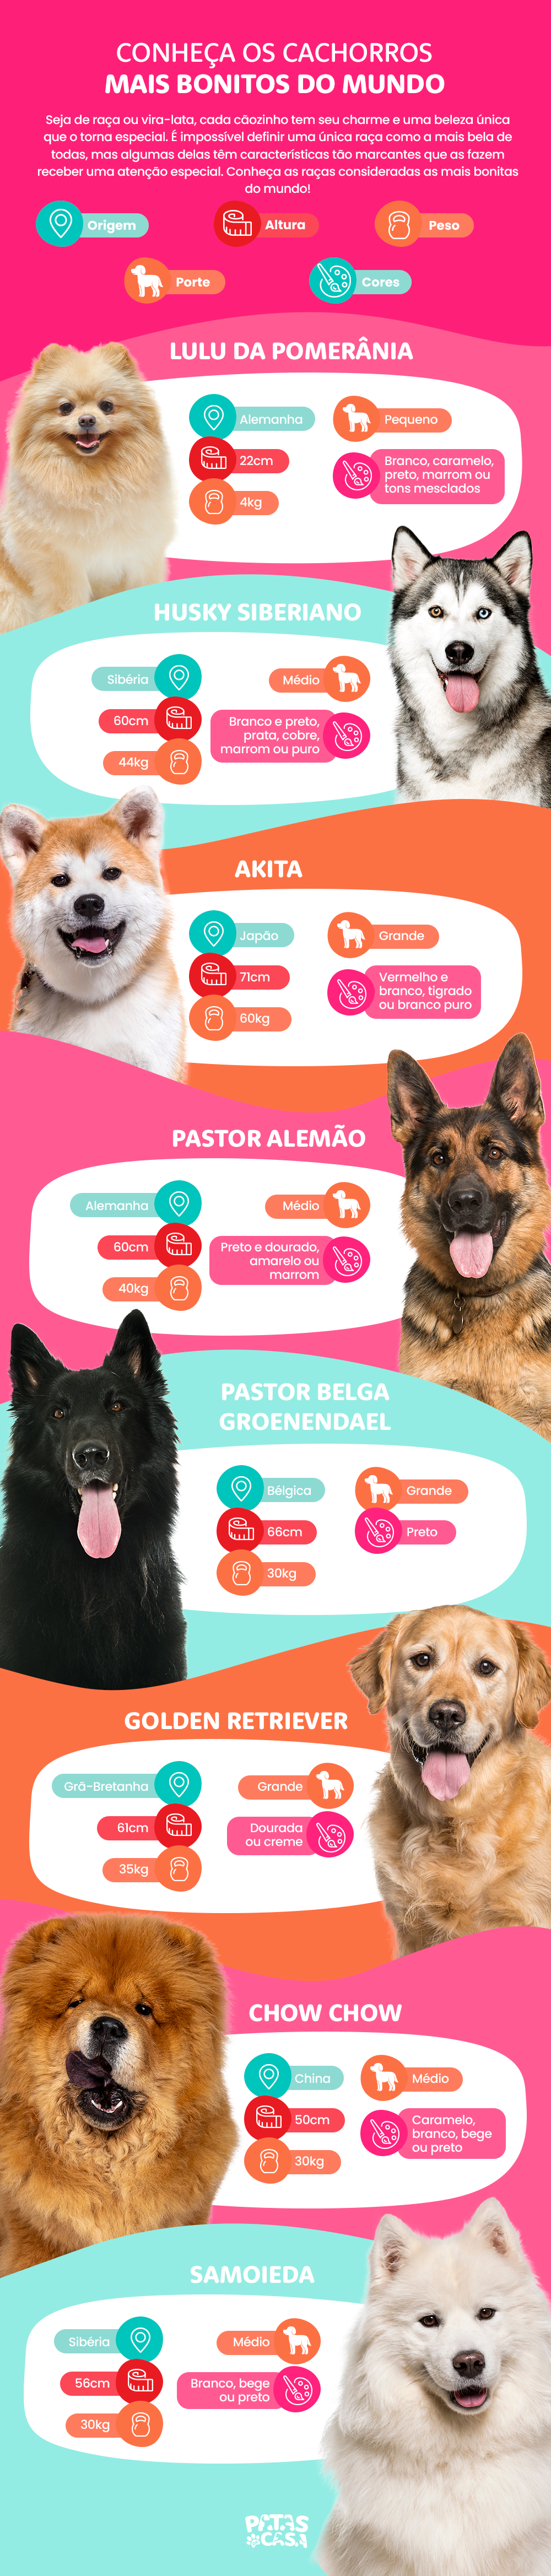 infográfico sobre cachorros mais bonitos do mundo